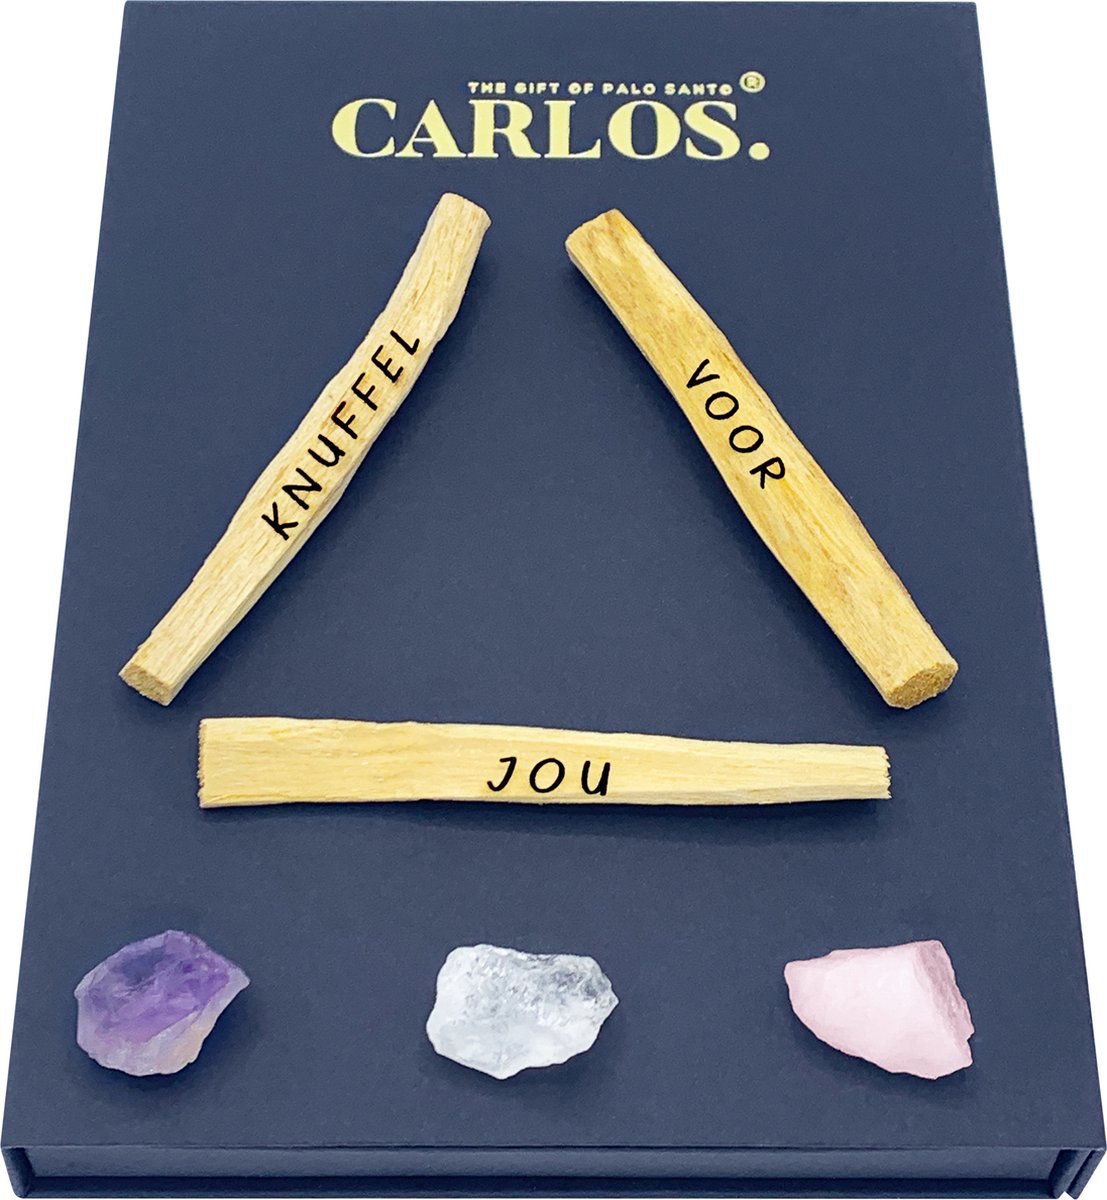 Luxe giftset PALO SANTO met gegraveerde boodschap KNUFFEL VOOR JOU + 3 edelstenen: amethist, bergkristal, rozenkwarts.